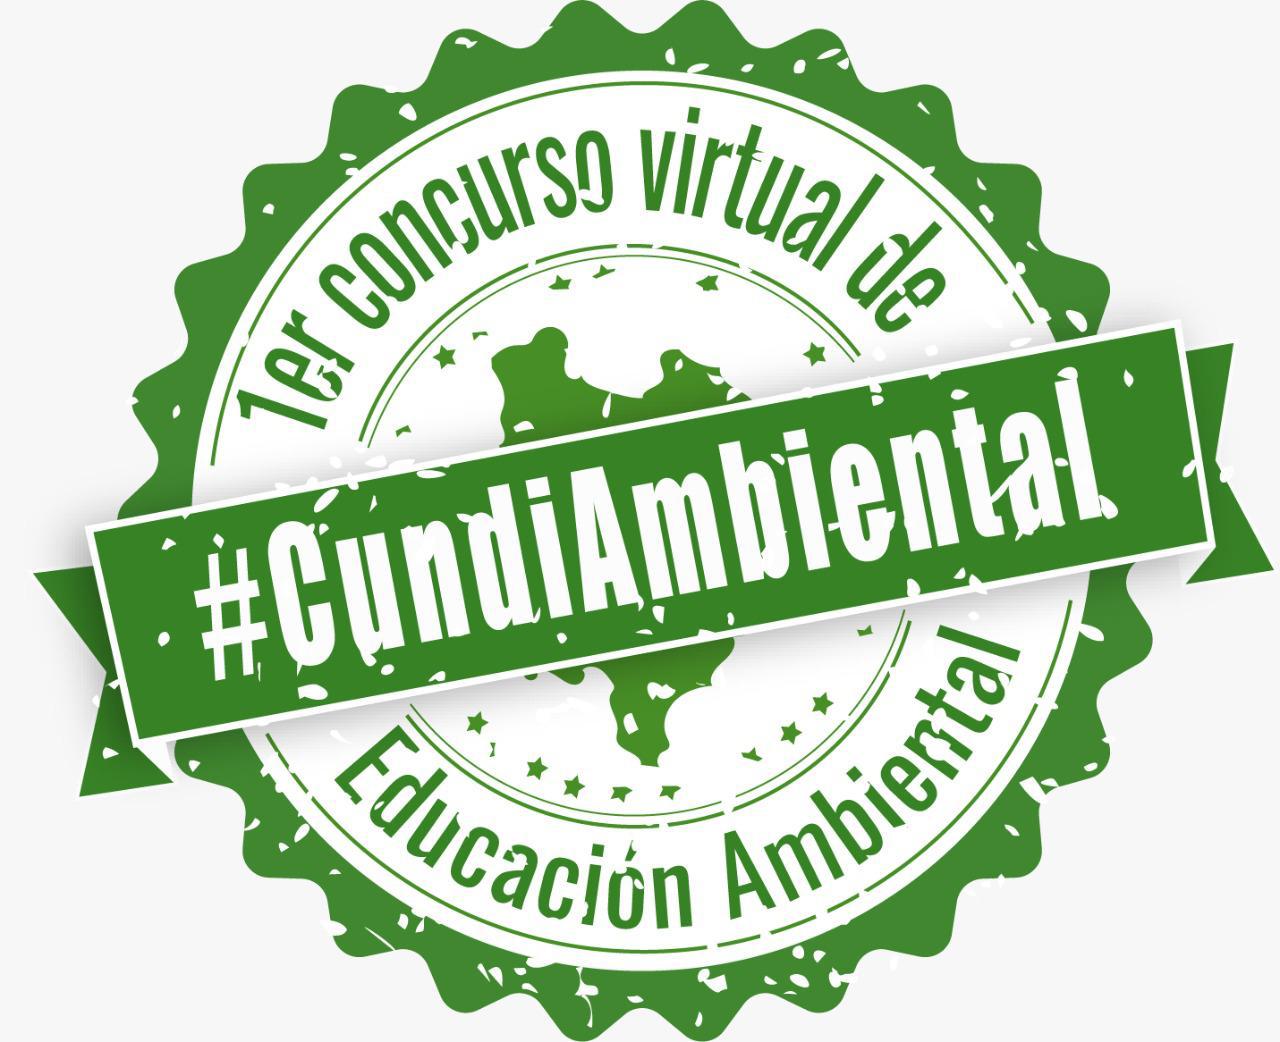 Quedan pocos días, inscríbete en el concurso virtual de educación ambiental para Cundinamarca


